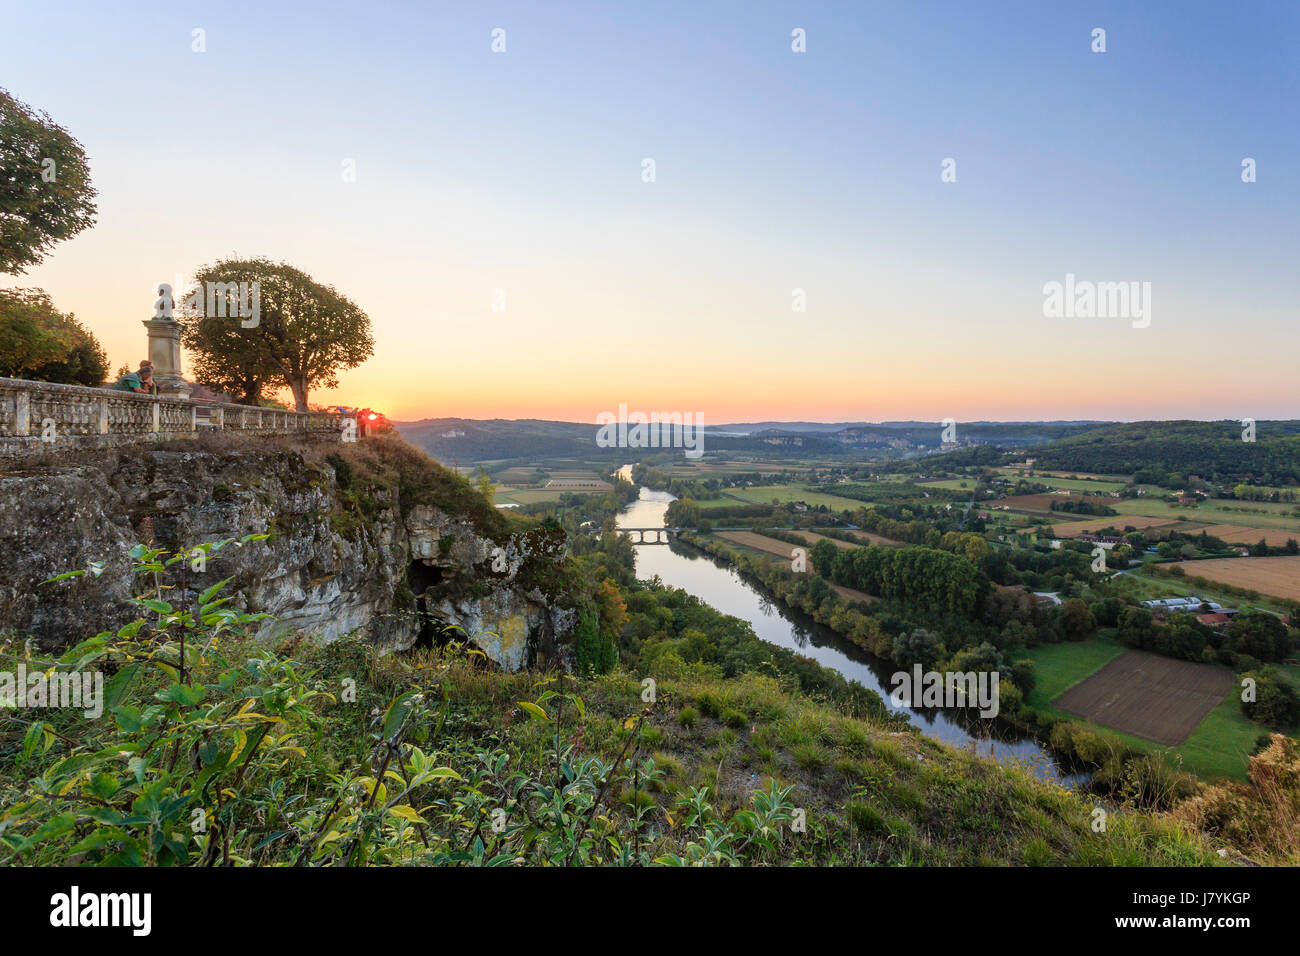 France, Dordogne, Domme, les plus Beaux villages de France (les plus beaux villages de France), vue du belvédère de la barre au coucher du soleil Banque D'Images